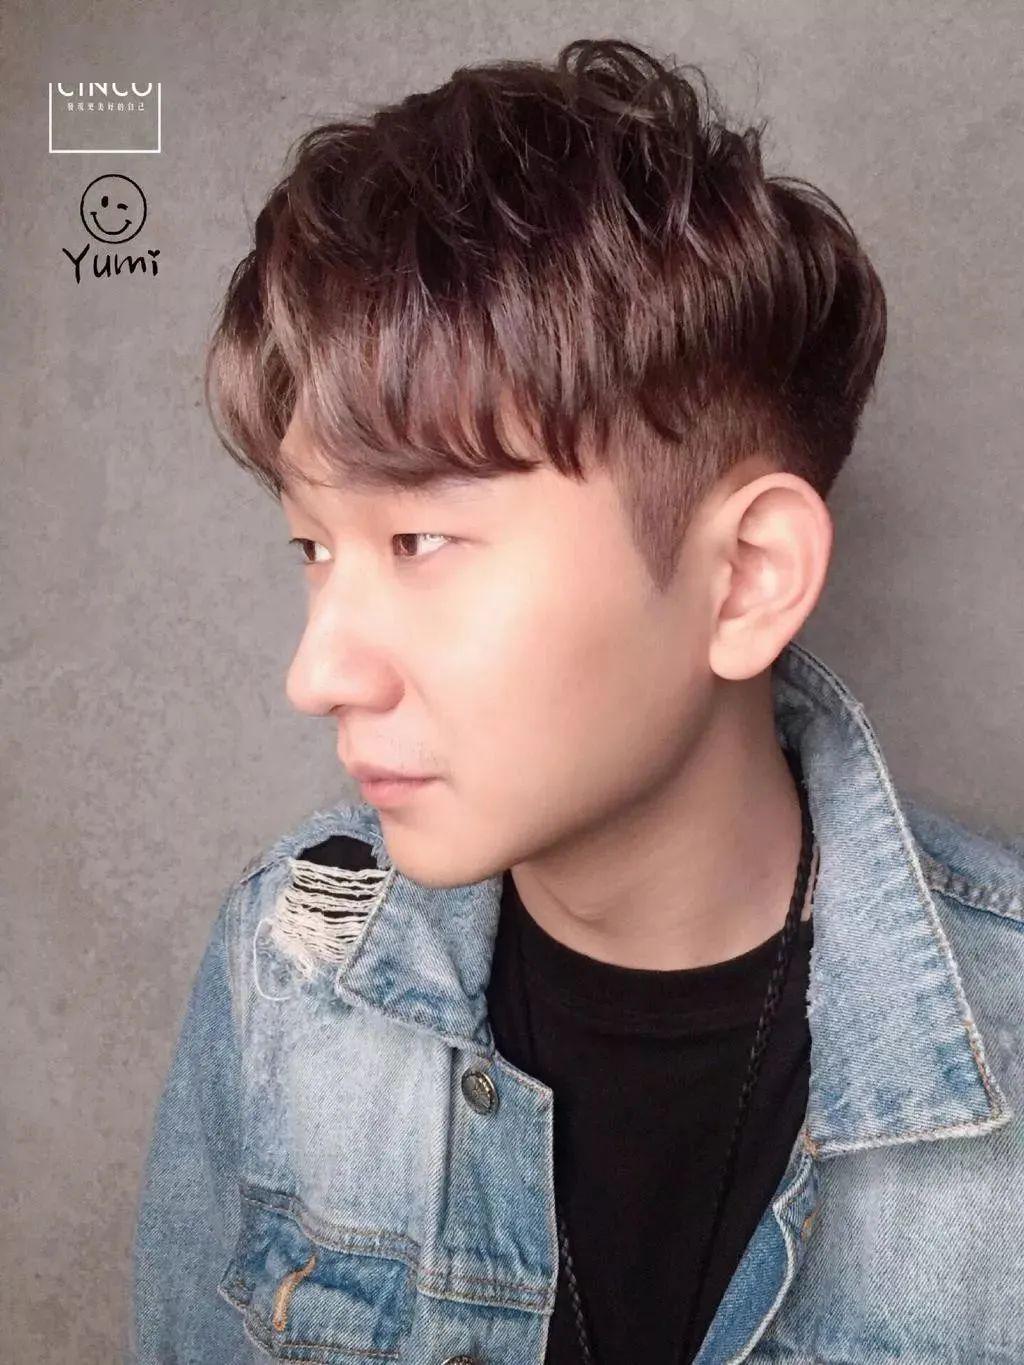 韩国男士最新短发发型,大叔终结站不用整理超省时